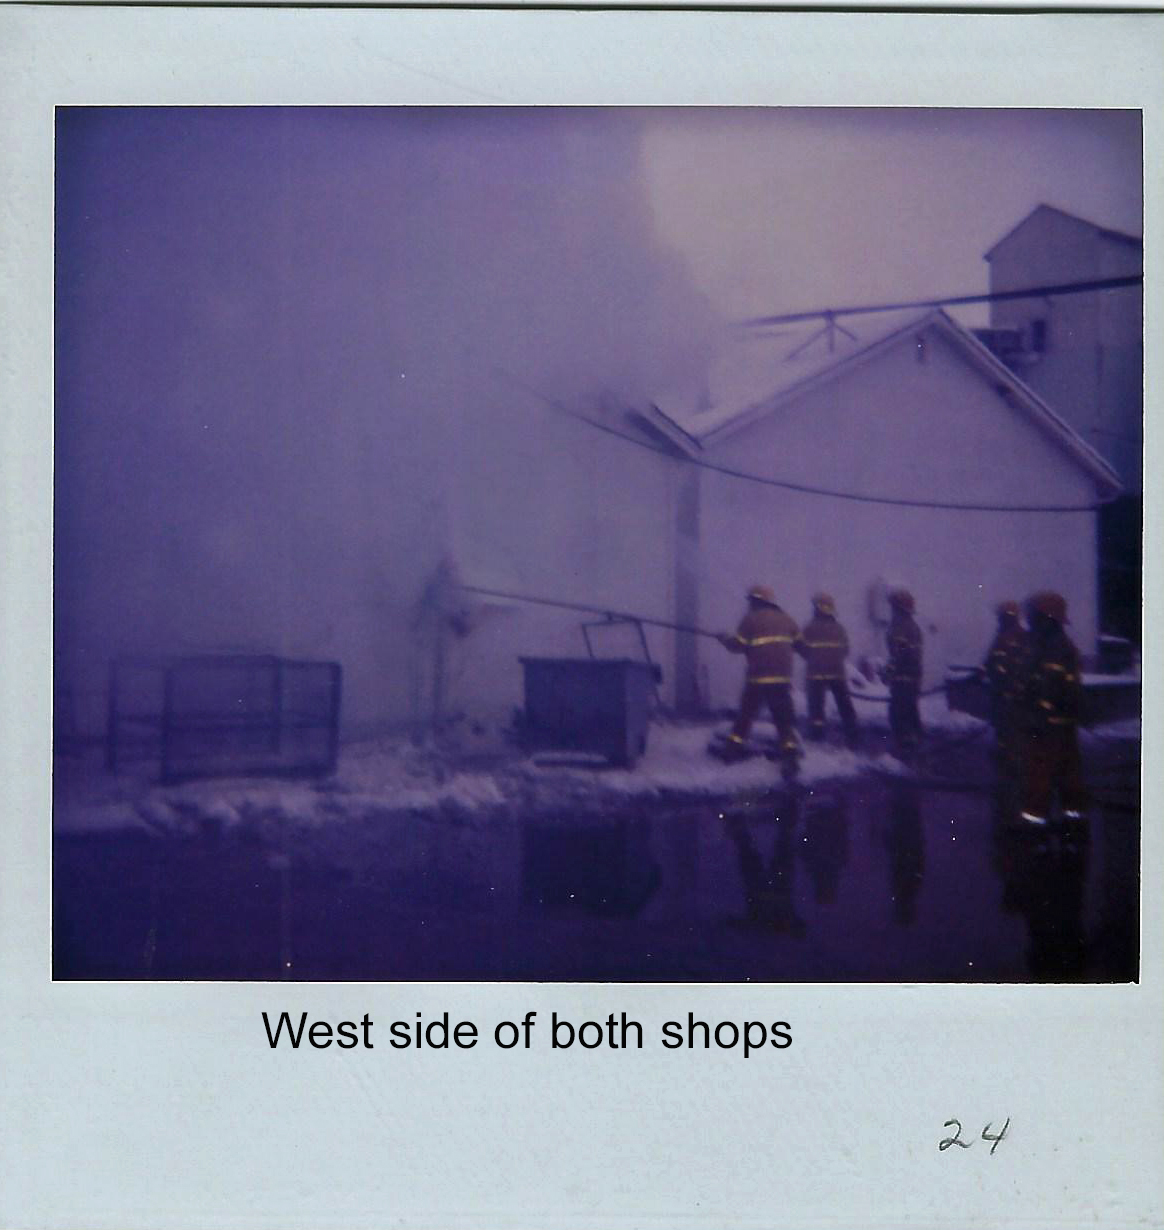 West side both shops